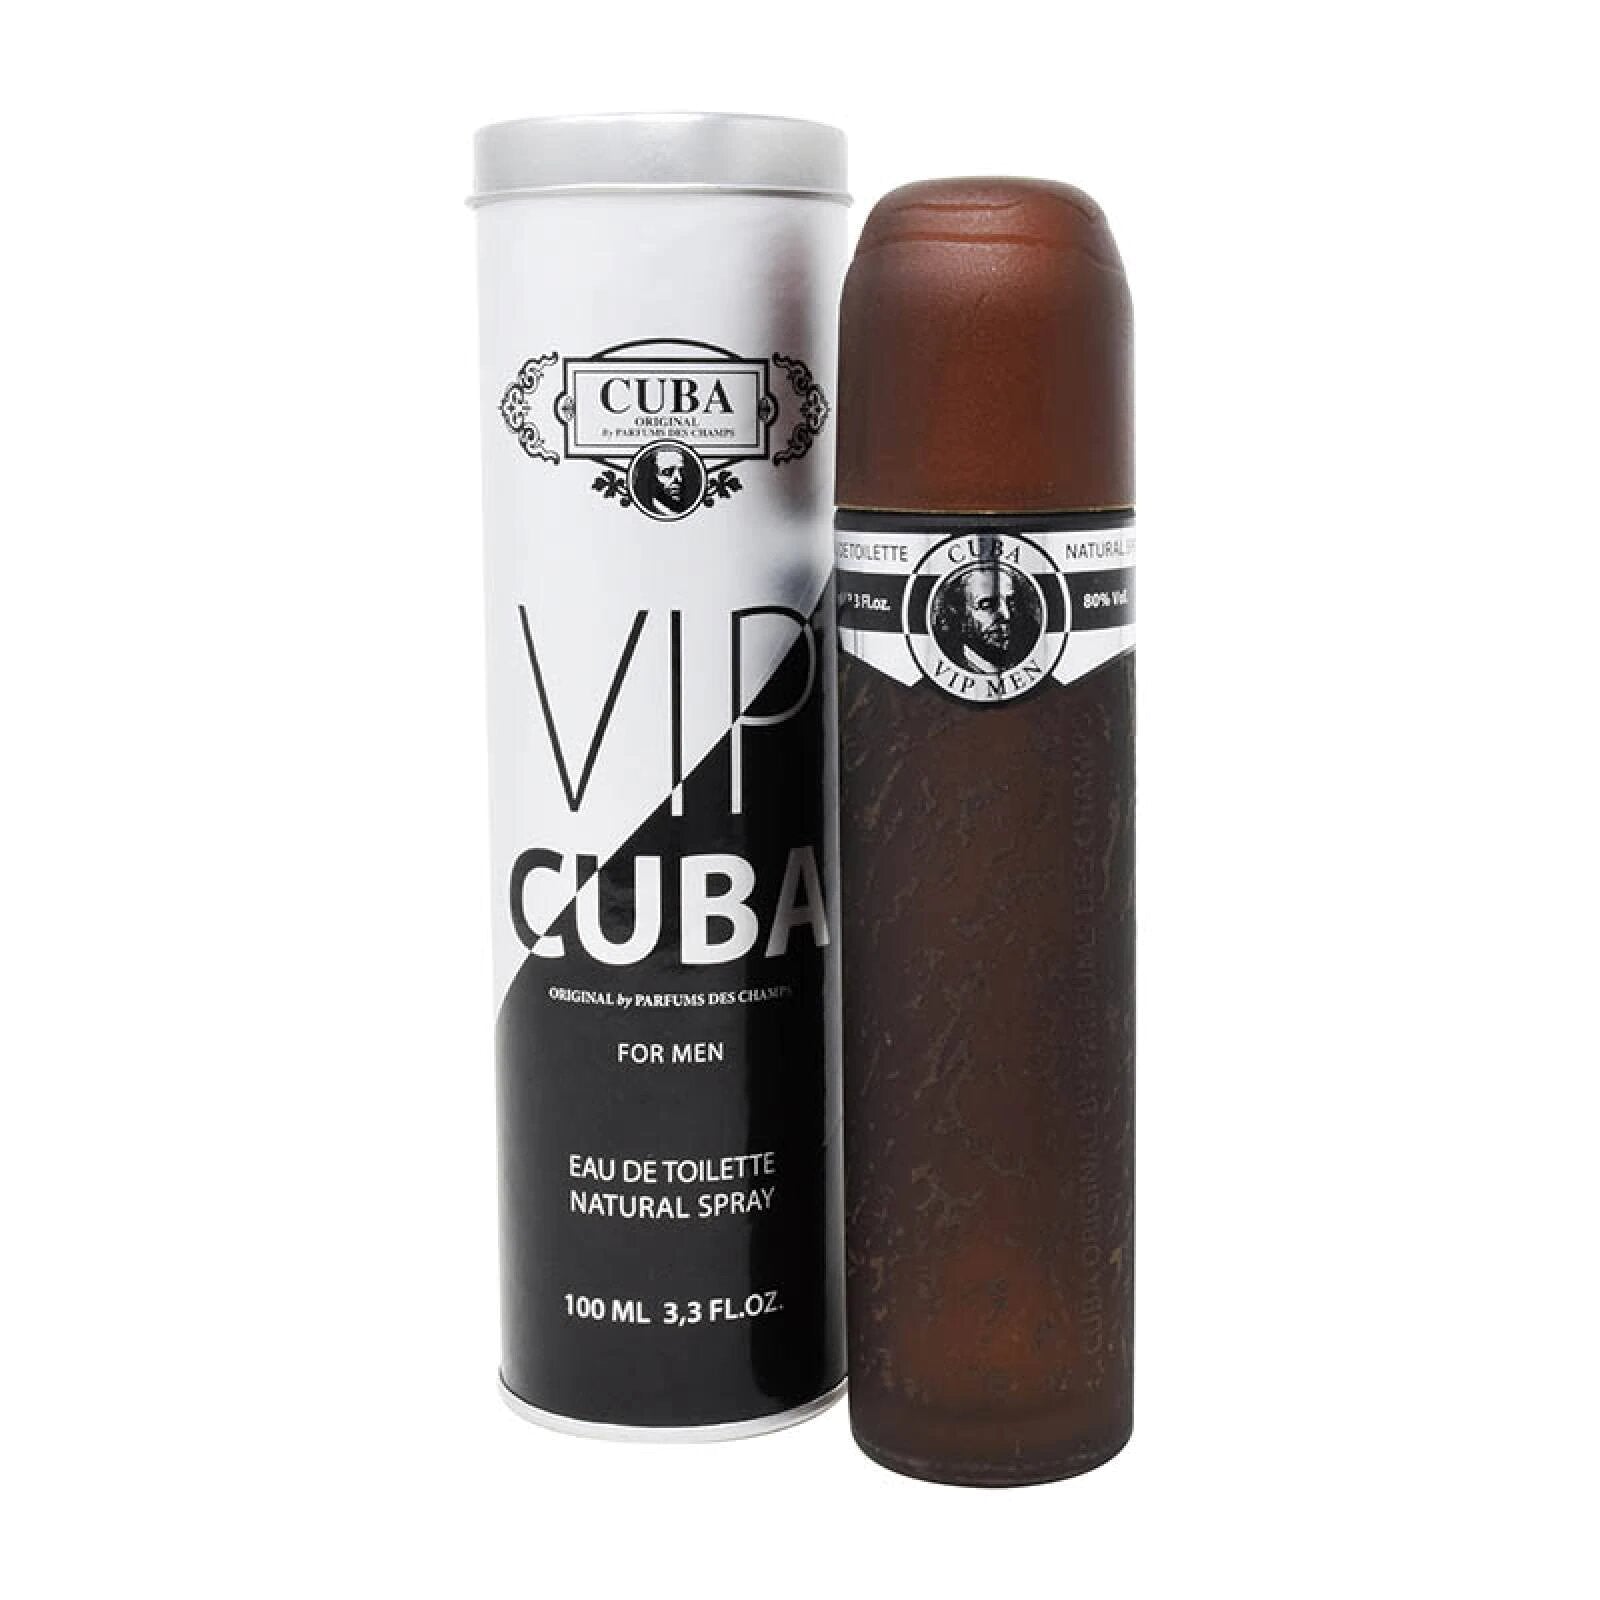 Cuba VIP para hombre / 100 ml Eau De Toilette Spray